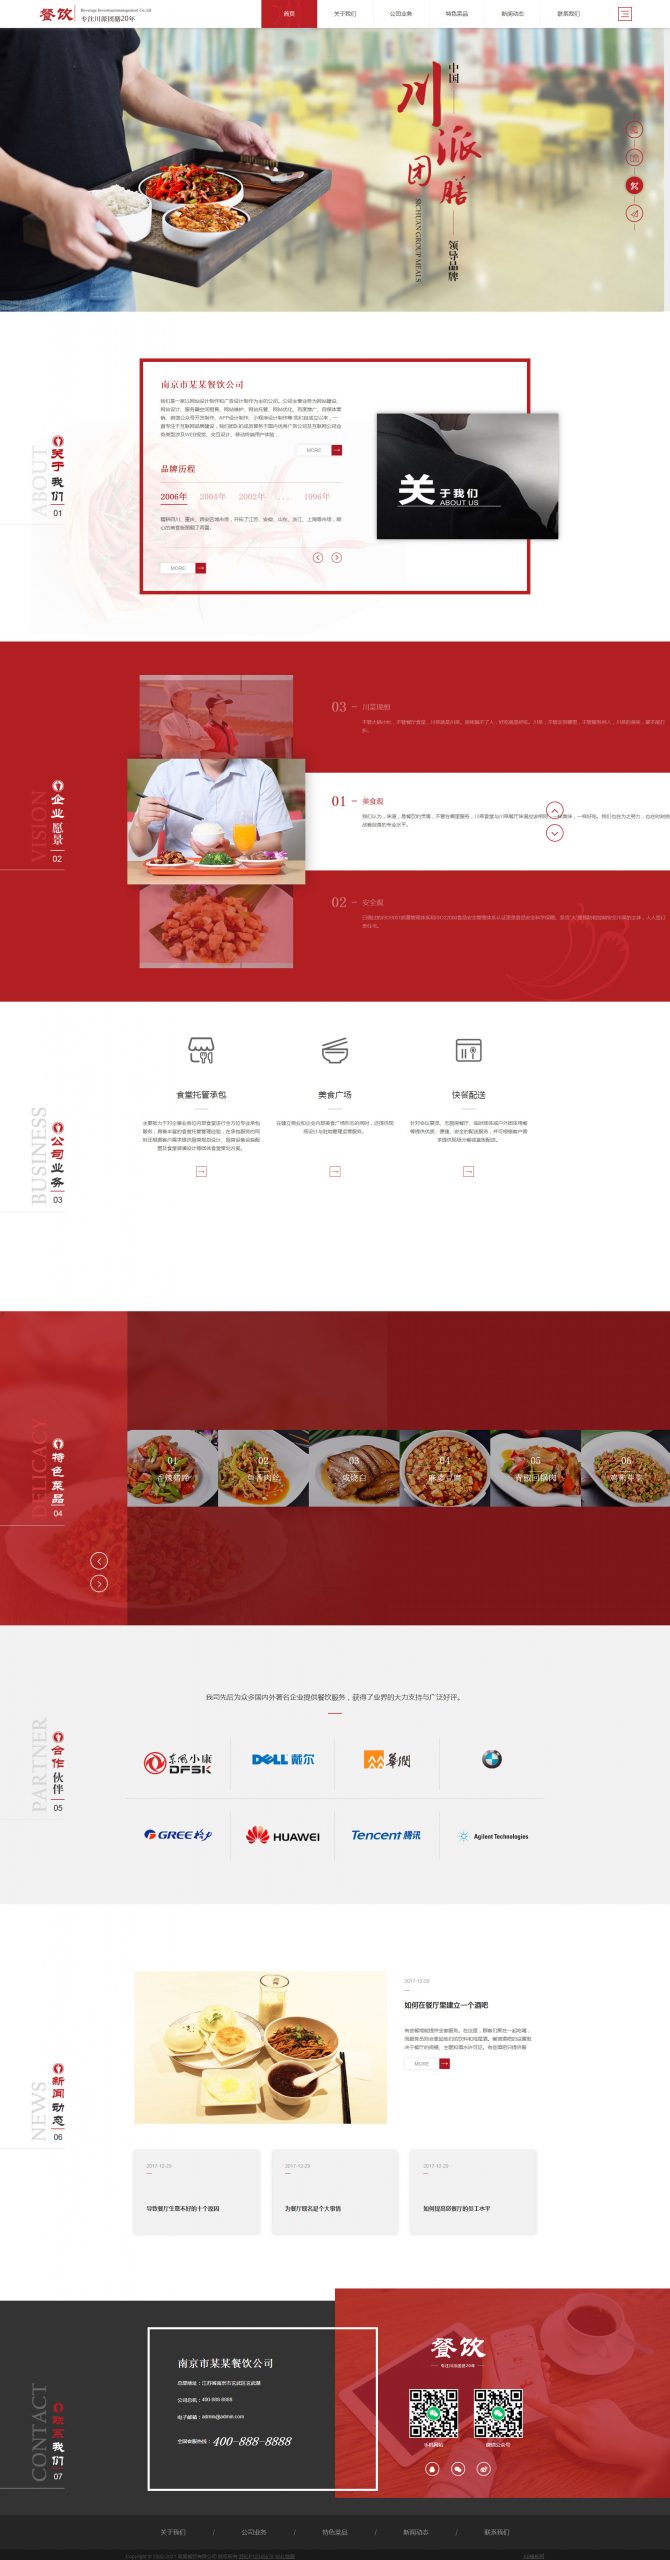 【织梦模板】红色高端响应式美食餐饮集团餐饮投资管理公司网站模板 (自适应手机端)